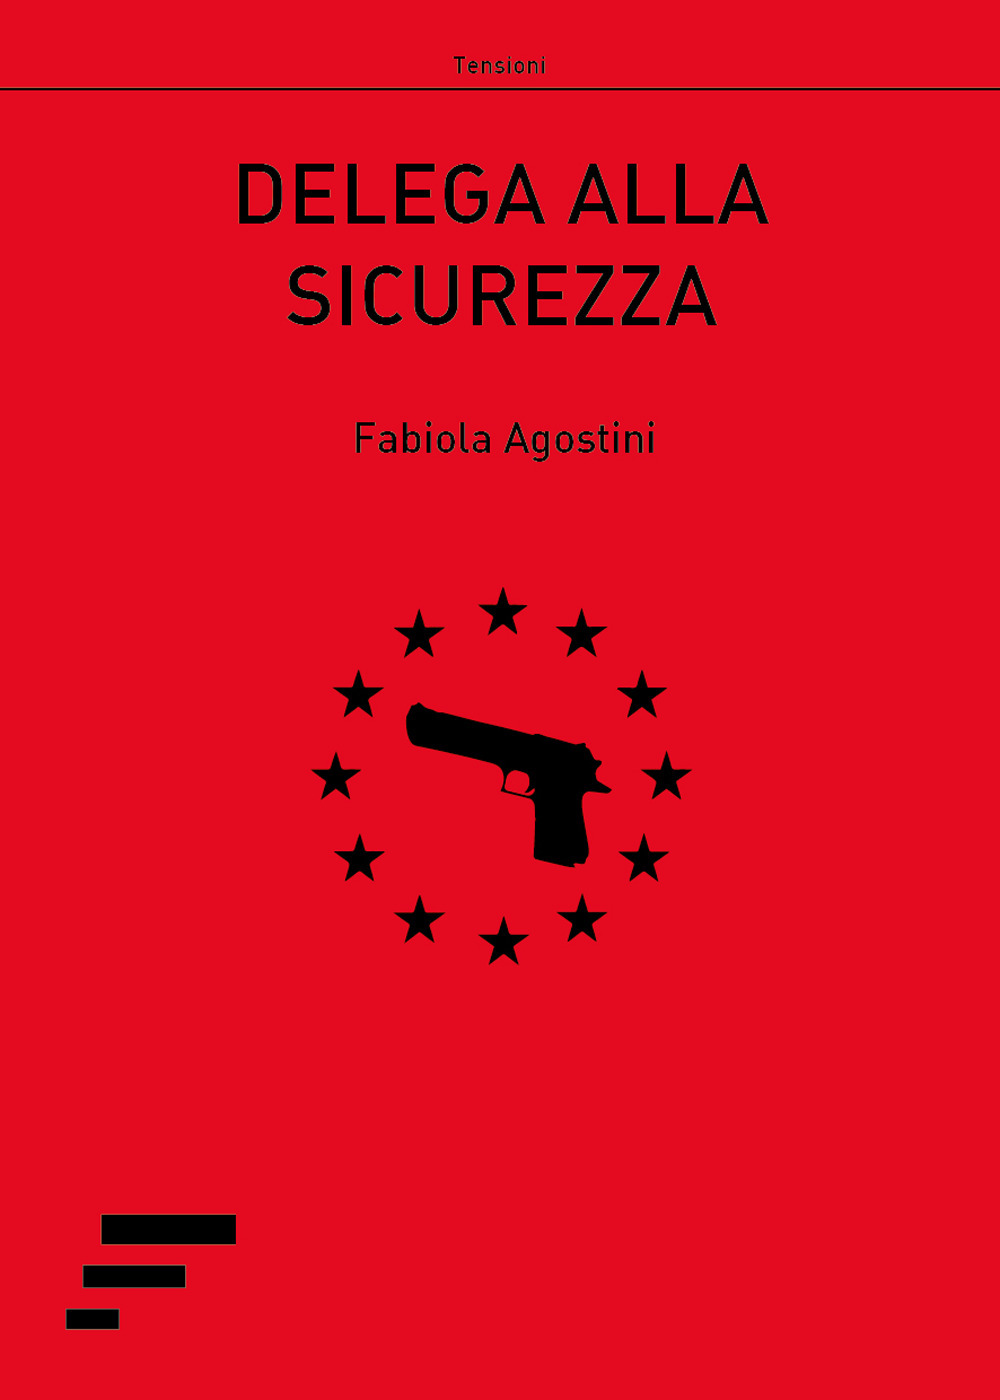 Libri Fabiola Agostini - Delega Alla Sicurezza NUOVO SIGILLATO, EDIZIONE DEL 15/05/2017 SUBITO DISPONIBILE